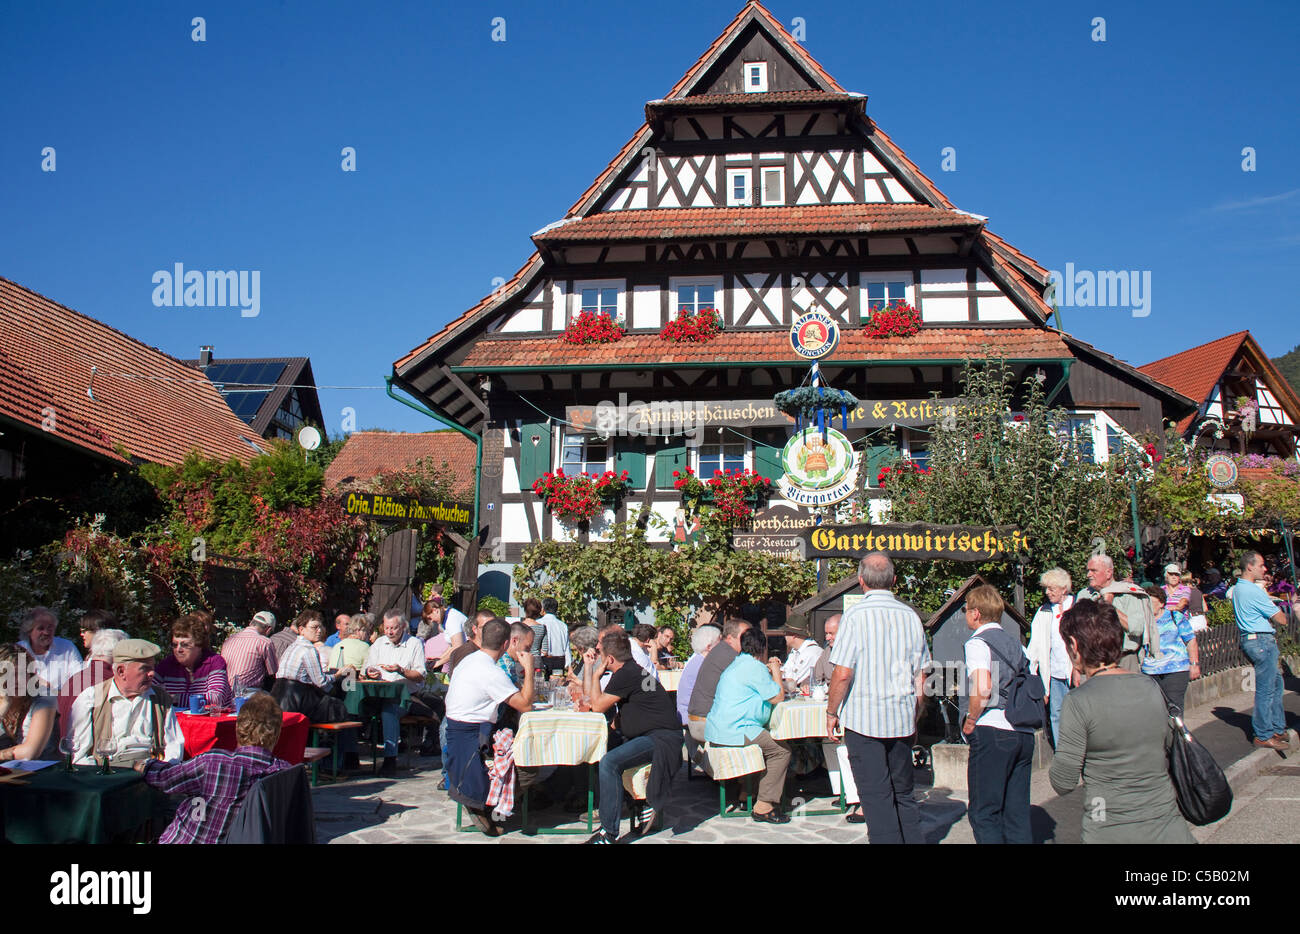 Gartenwirtschaft vom Knusperhaeuschen, Sasbachwalden, Schwarzwald, ristorante con giardino a Sasbachwalden, Foresta Nera Foto Stock